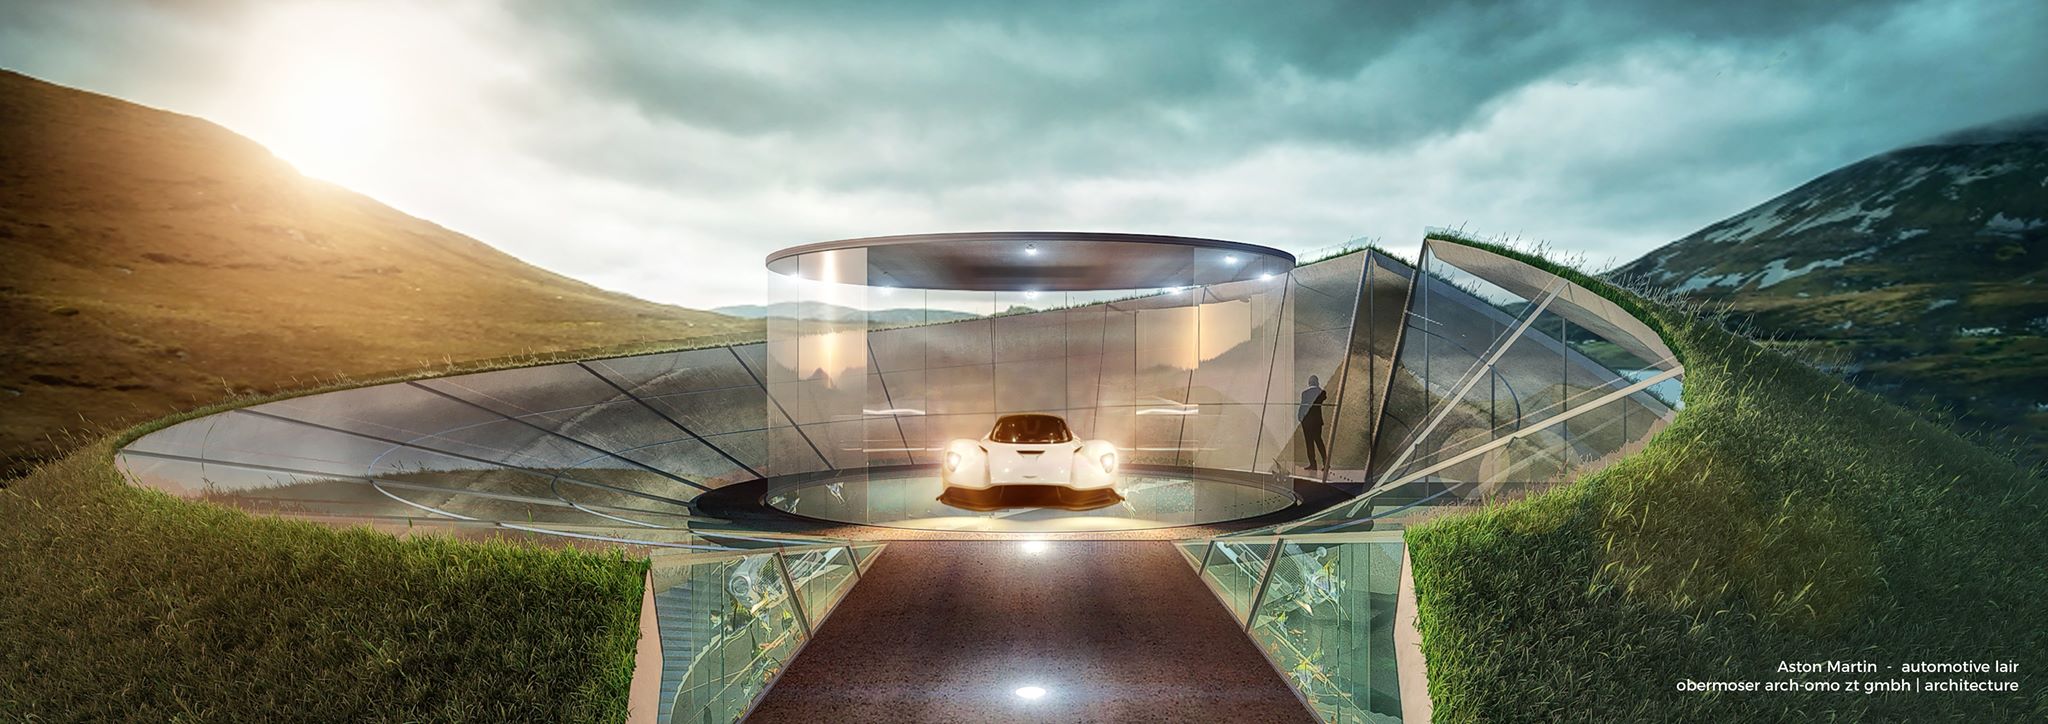 Trái đất đang nóng dần lên và hãng xe hơi Aston Martin có ý định xây hầm trú kiêm gara xe dưới nước